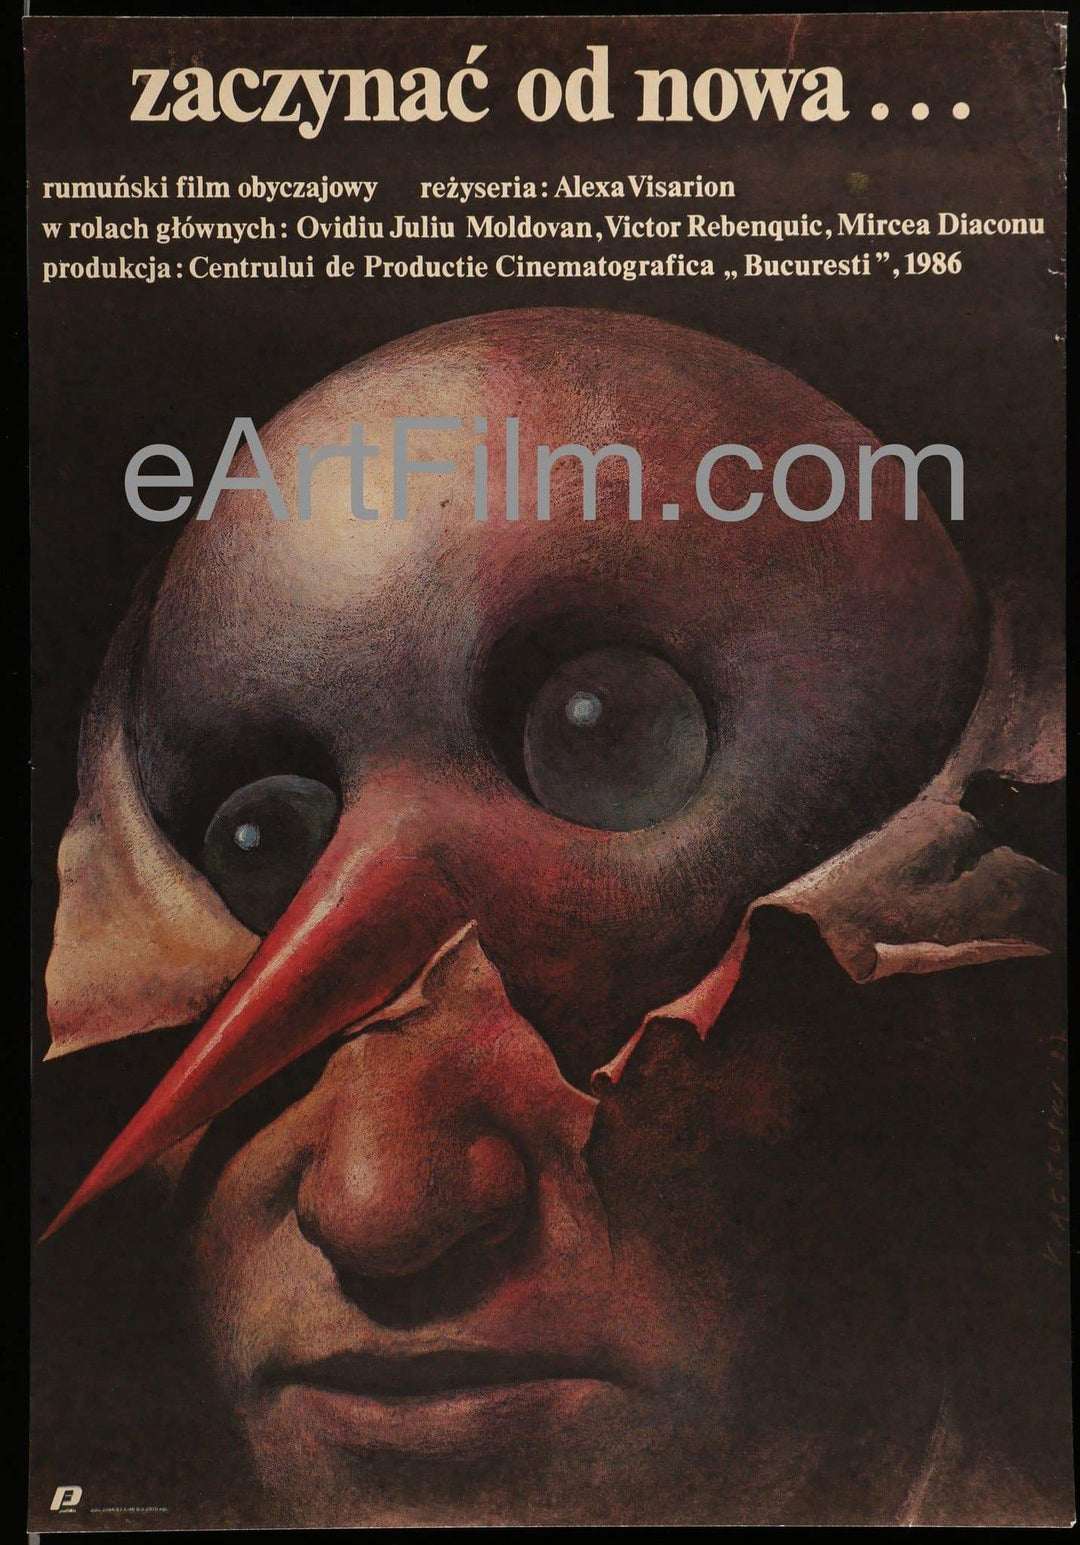 eArtFilm.com Polish Movie Poster (18.5"x26.75")-Original-Vintage-Movie-Poster Starting Over 1987 18.5x26.75 Movie Poster Poland